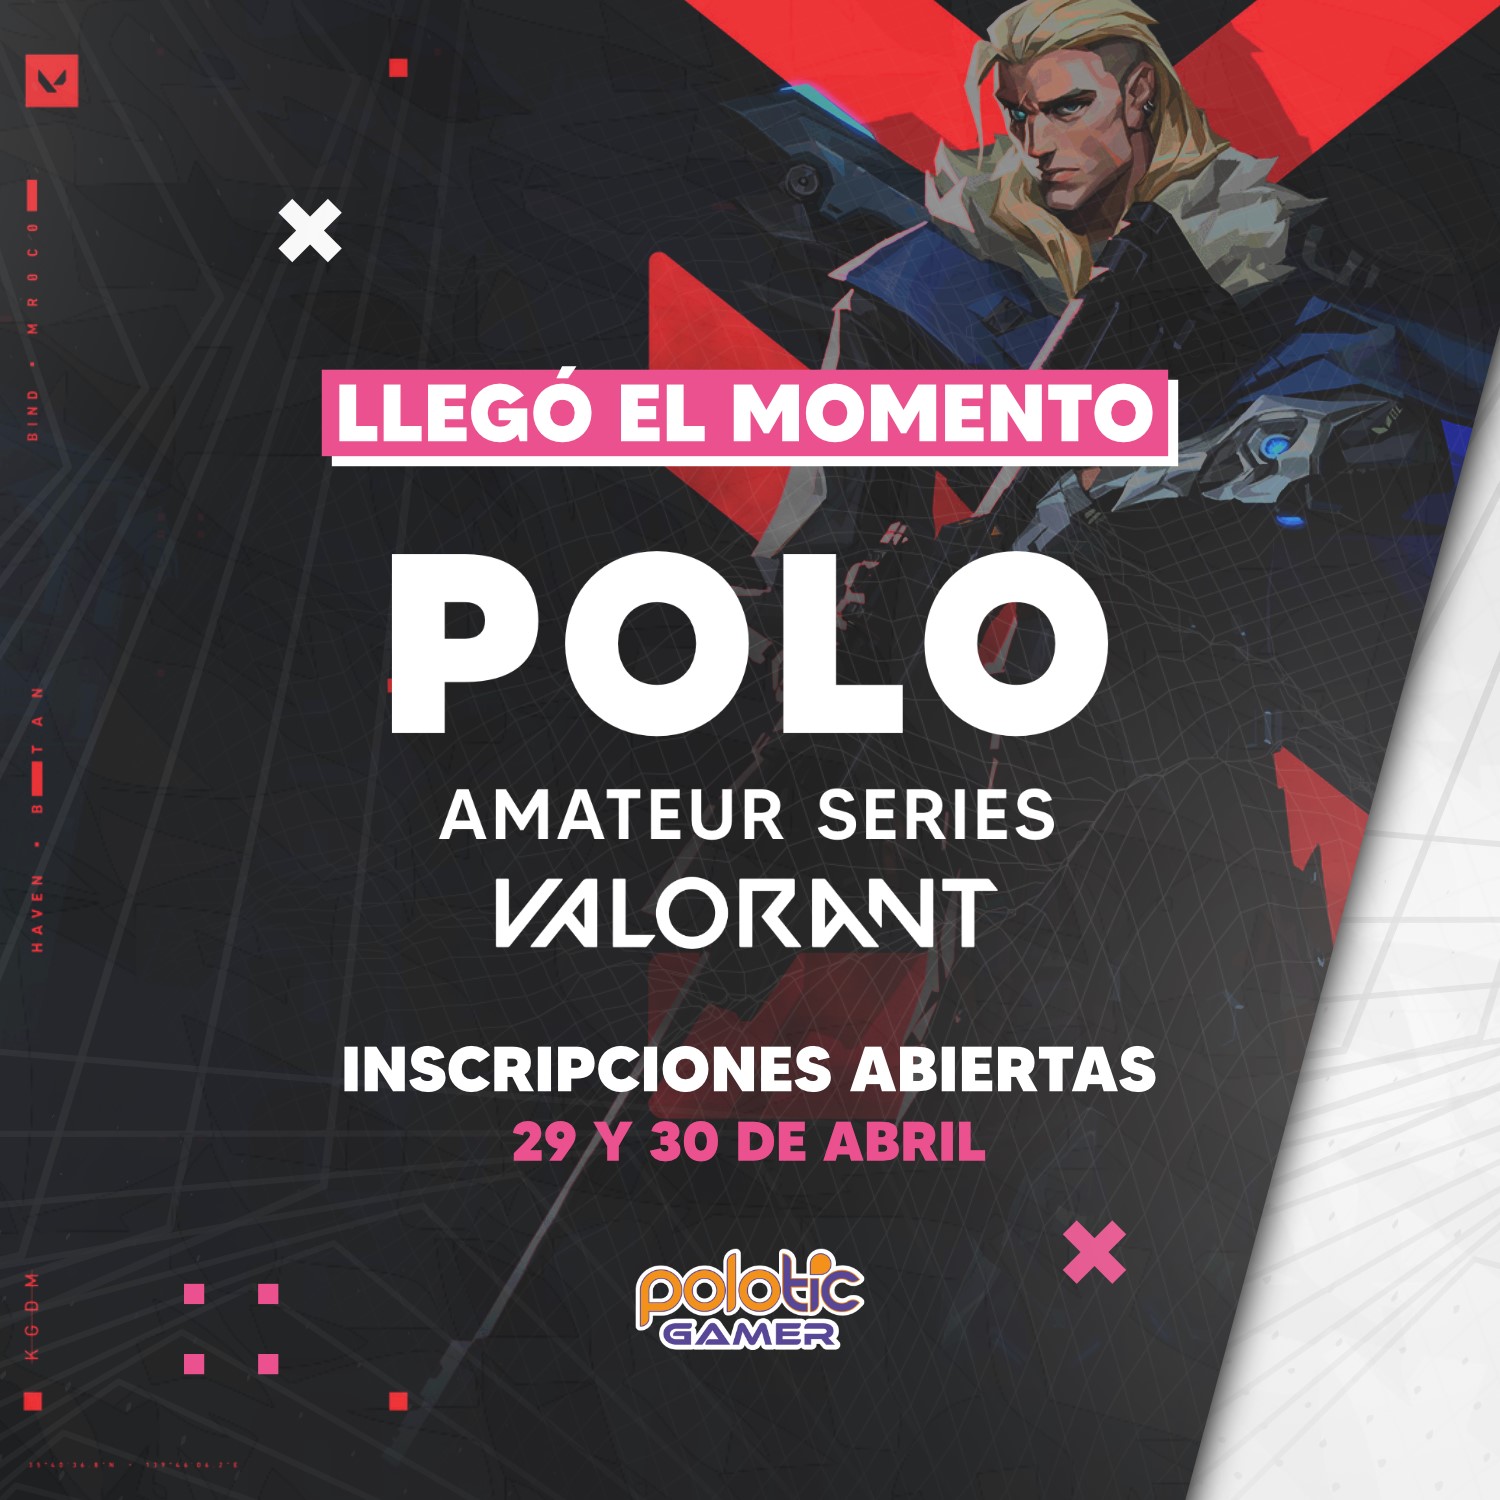 Inscriben para el torneo de Valorant del Polo TIC Gamer imagen-1